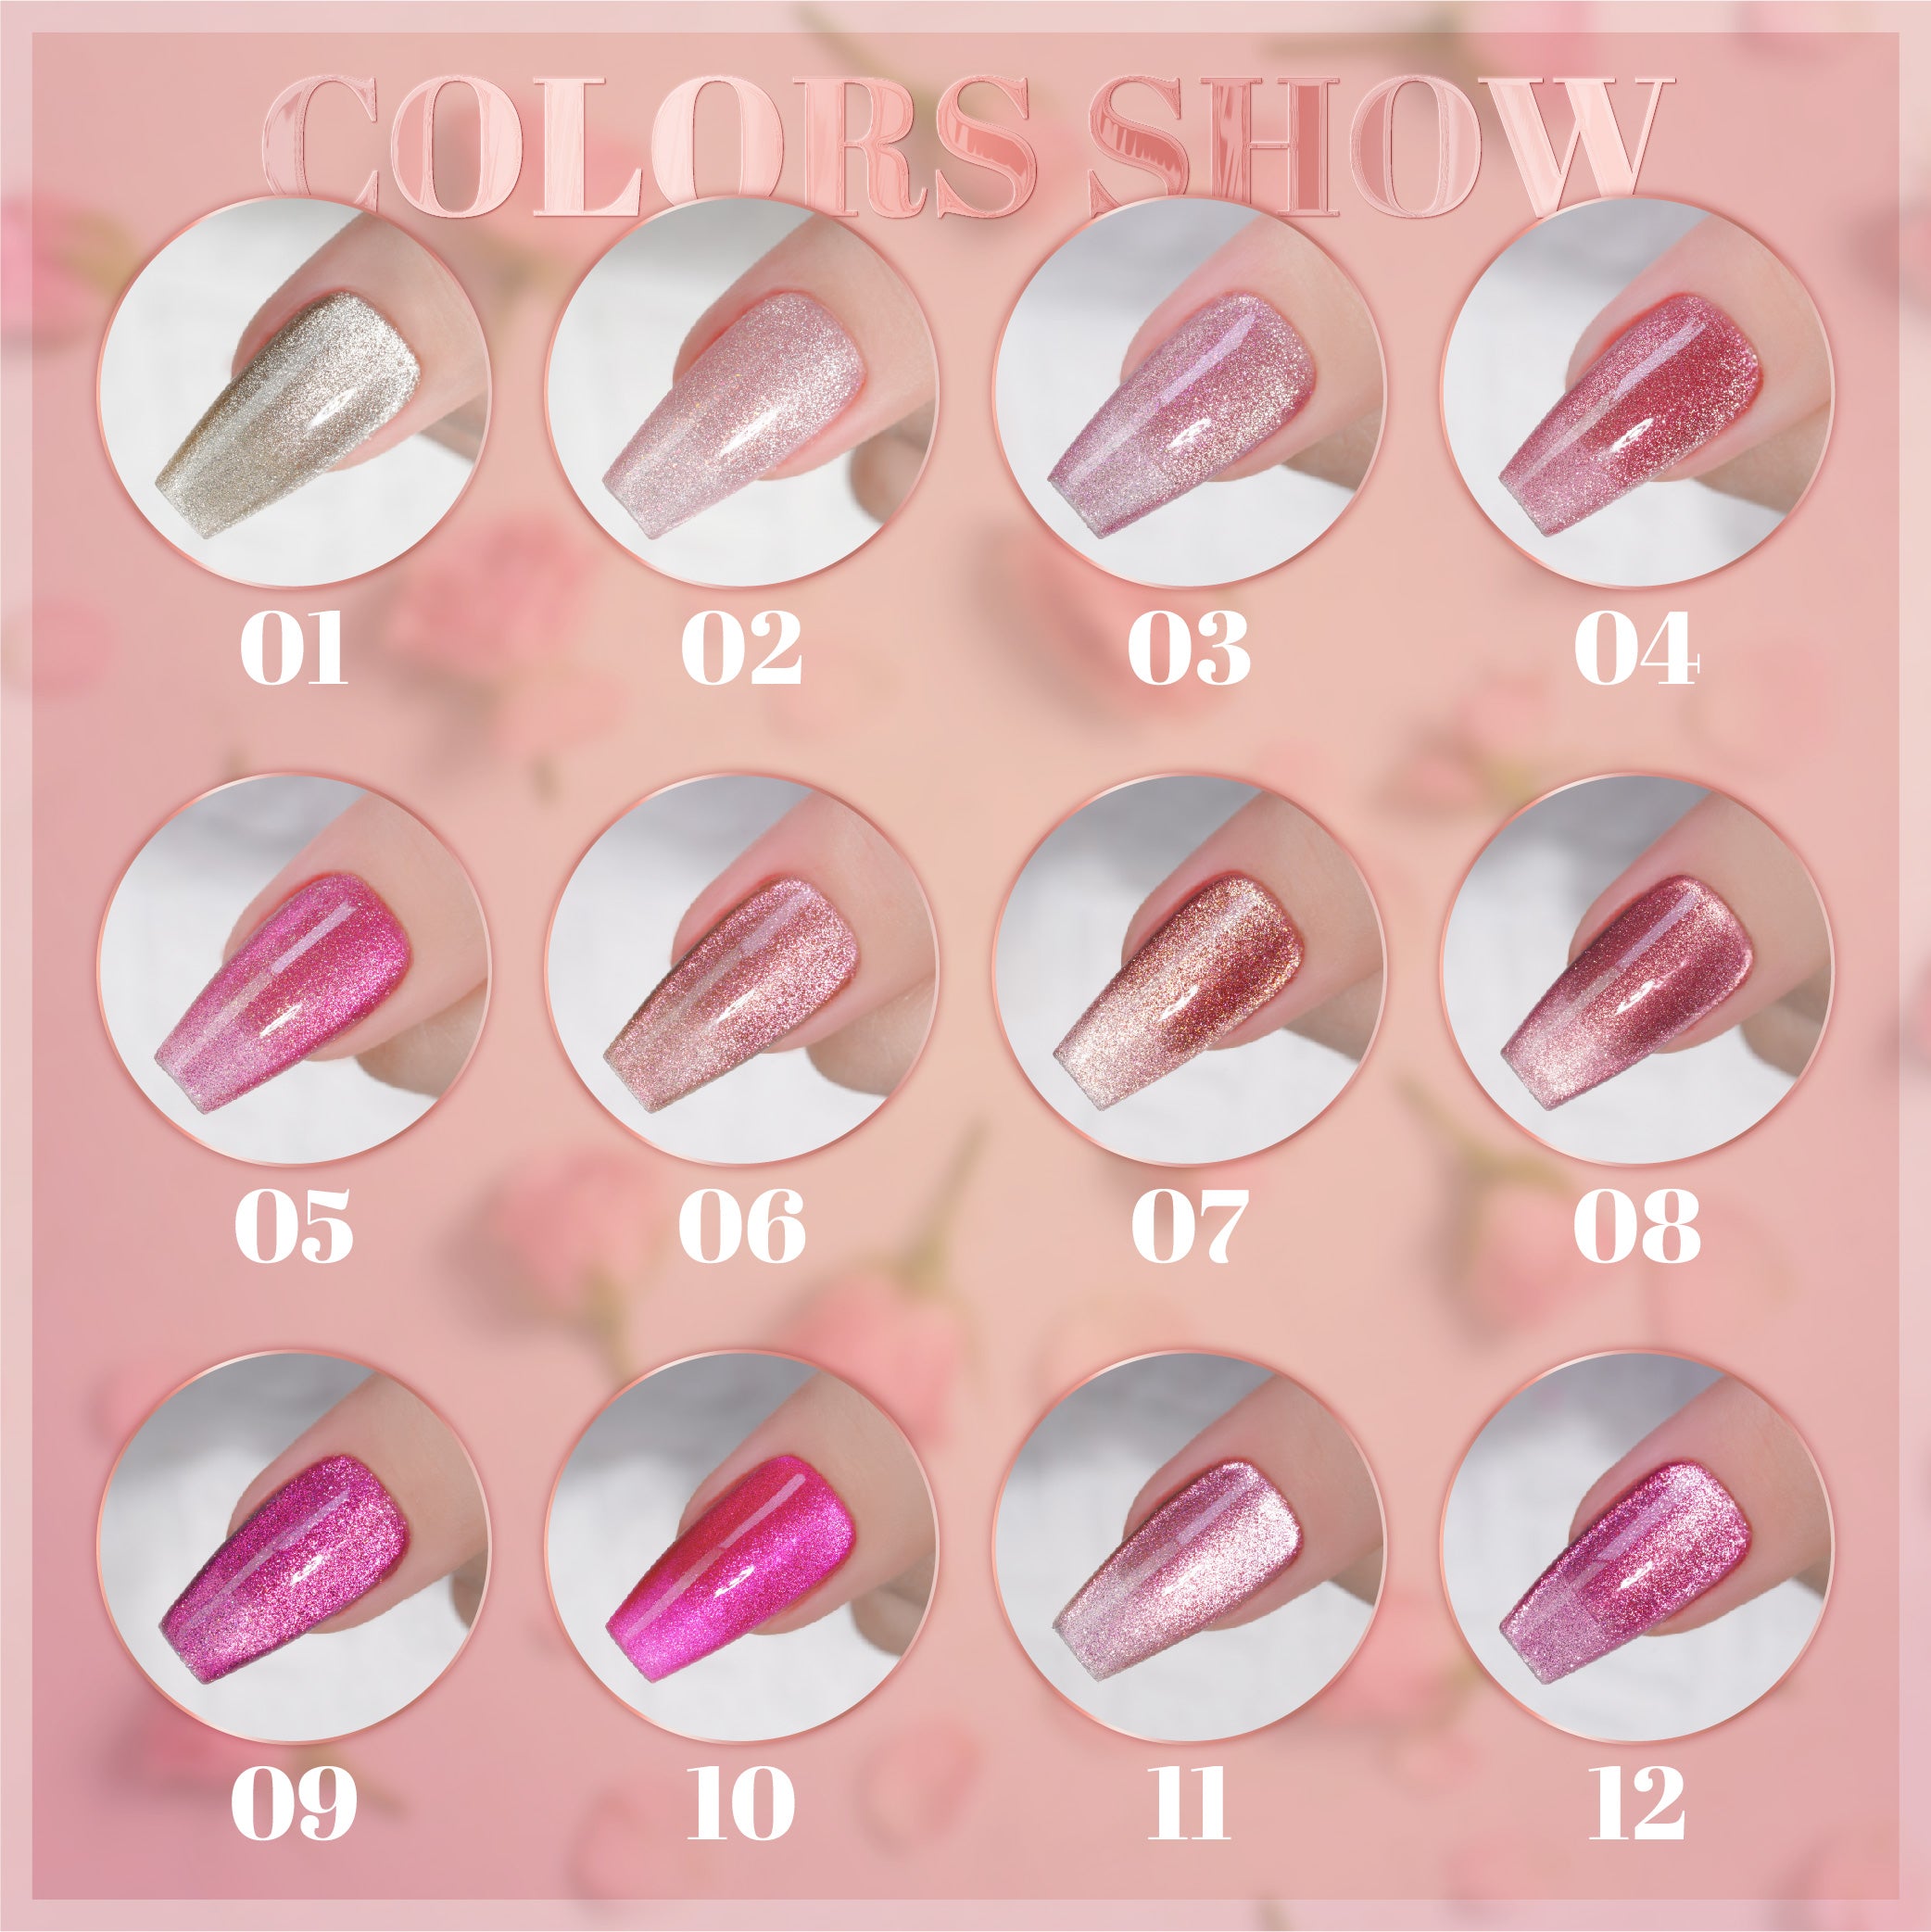 LDS DR 12 Colors - Gel Polish 0.5 oz - Dozen Rose Collection